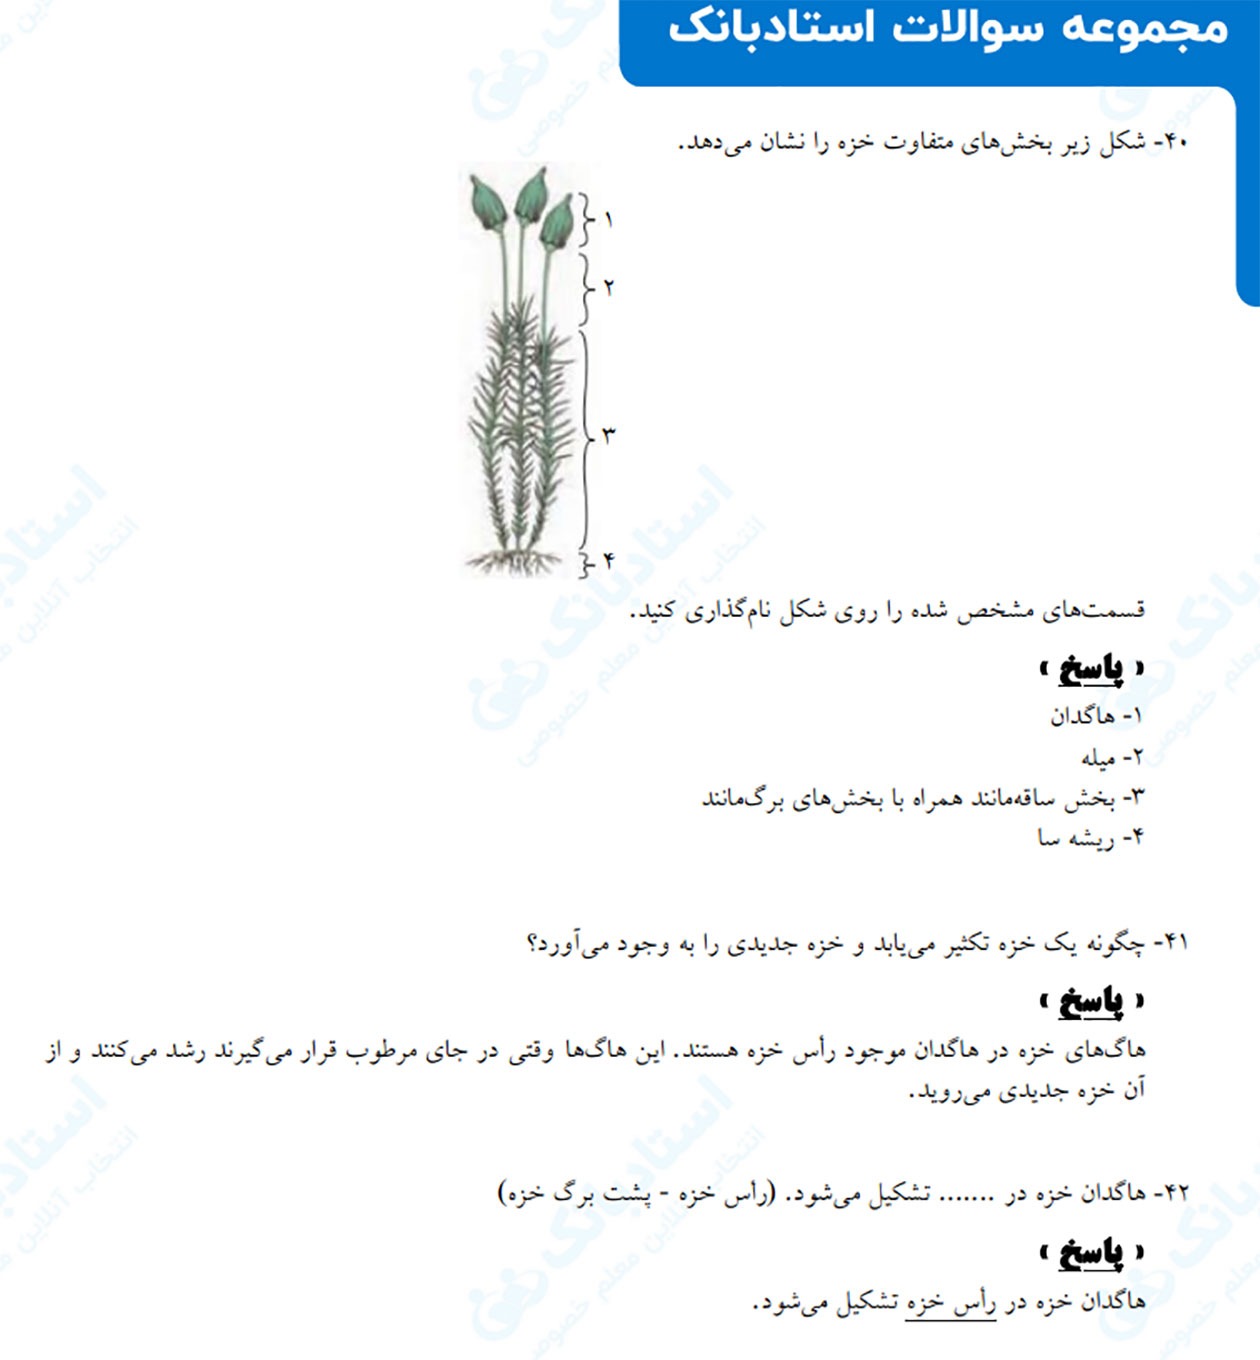 دانلود نمونه سوال امتحانی فصل 12 علوم نهم و بررسی بخش های مختلف گیاه مثل هاگدان، ریشه و ...